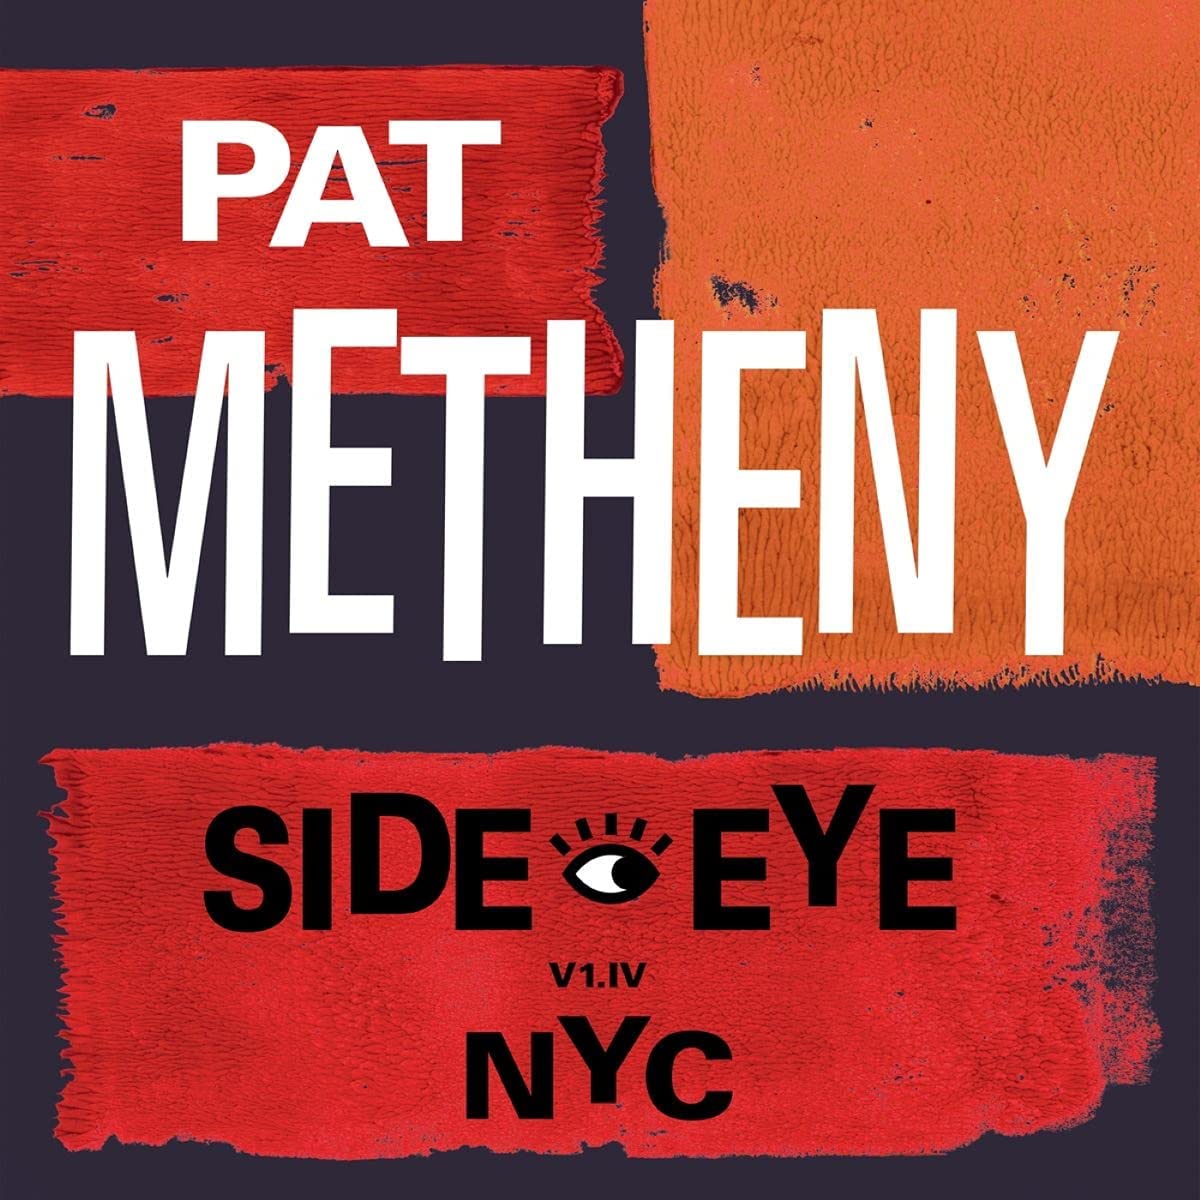 PAT METHENY - Side Eye - NYC (V1.IV) - 2LP - 180g Vinyl